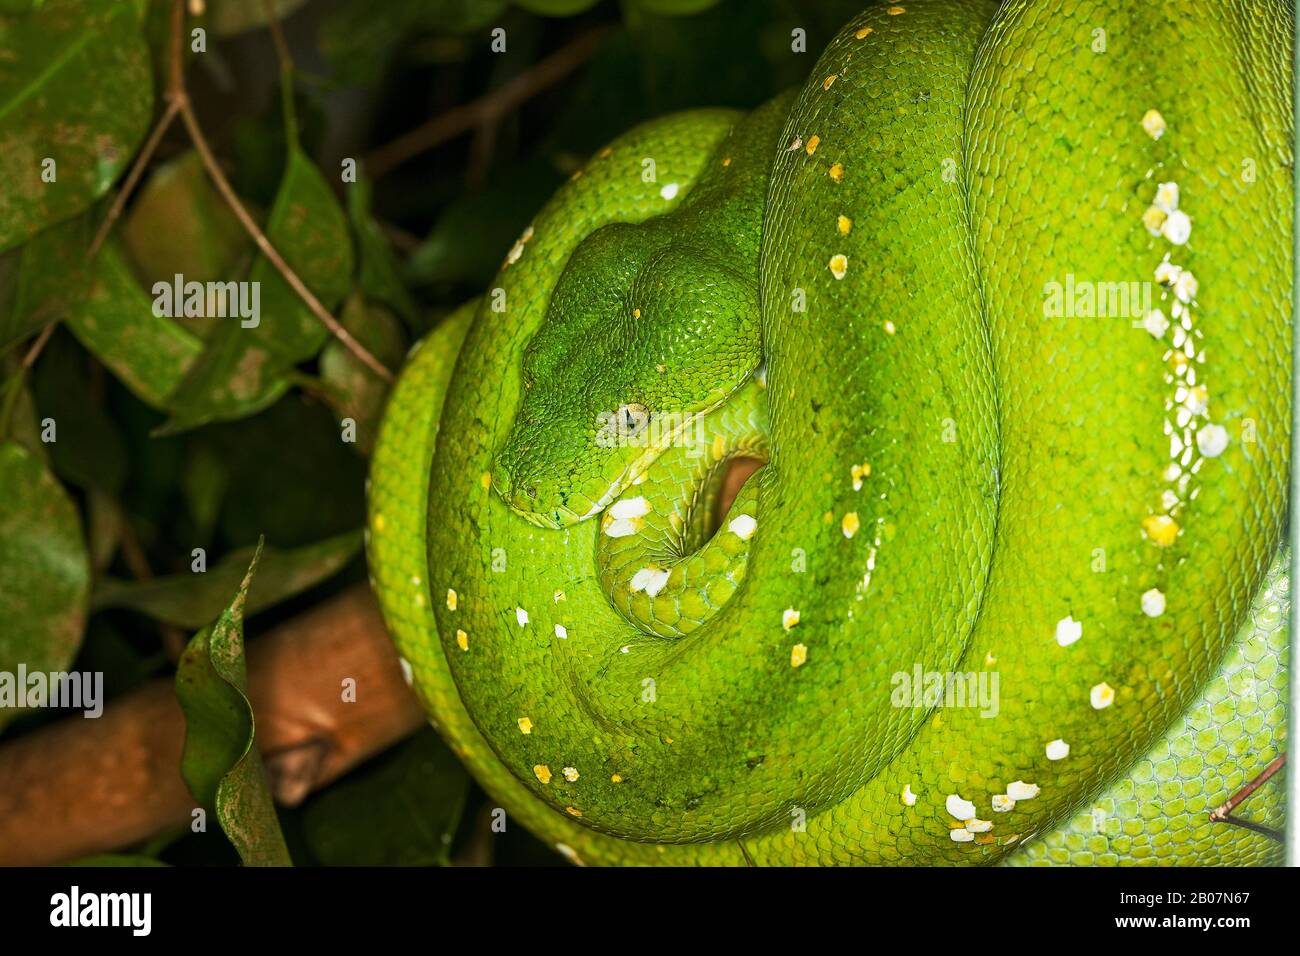 Green Tree Python, morelia viridis, Adulte spiralé sur la branche Banque D'Images